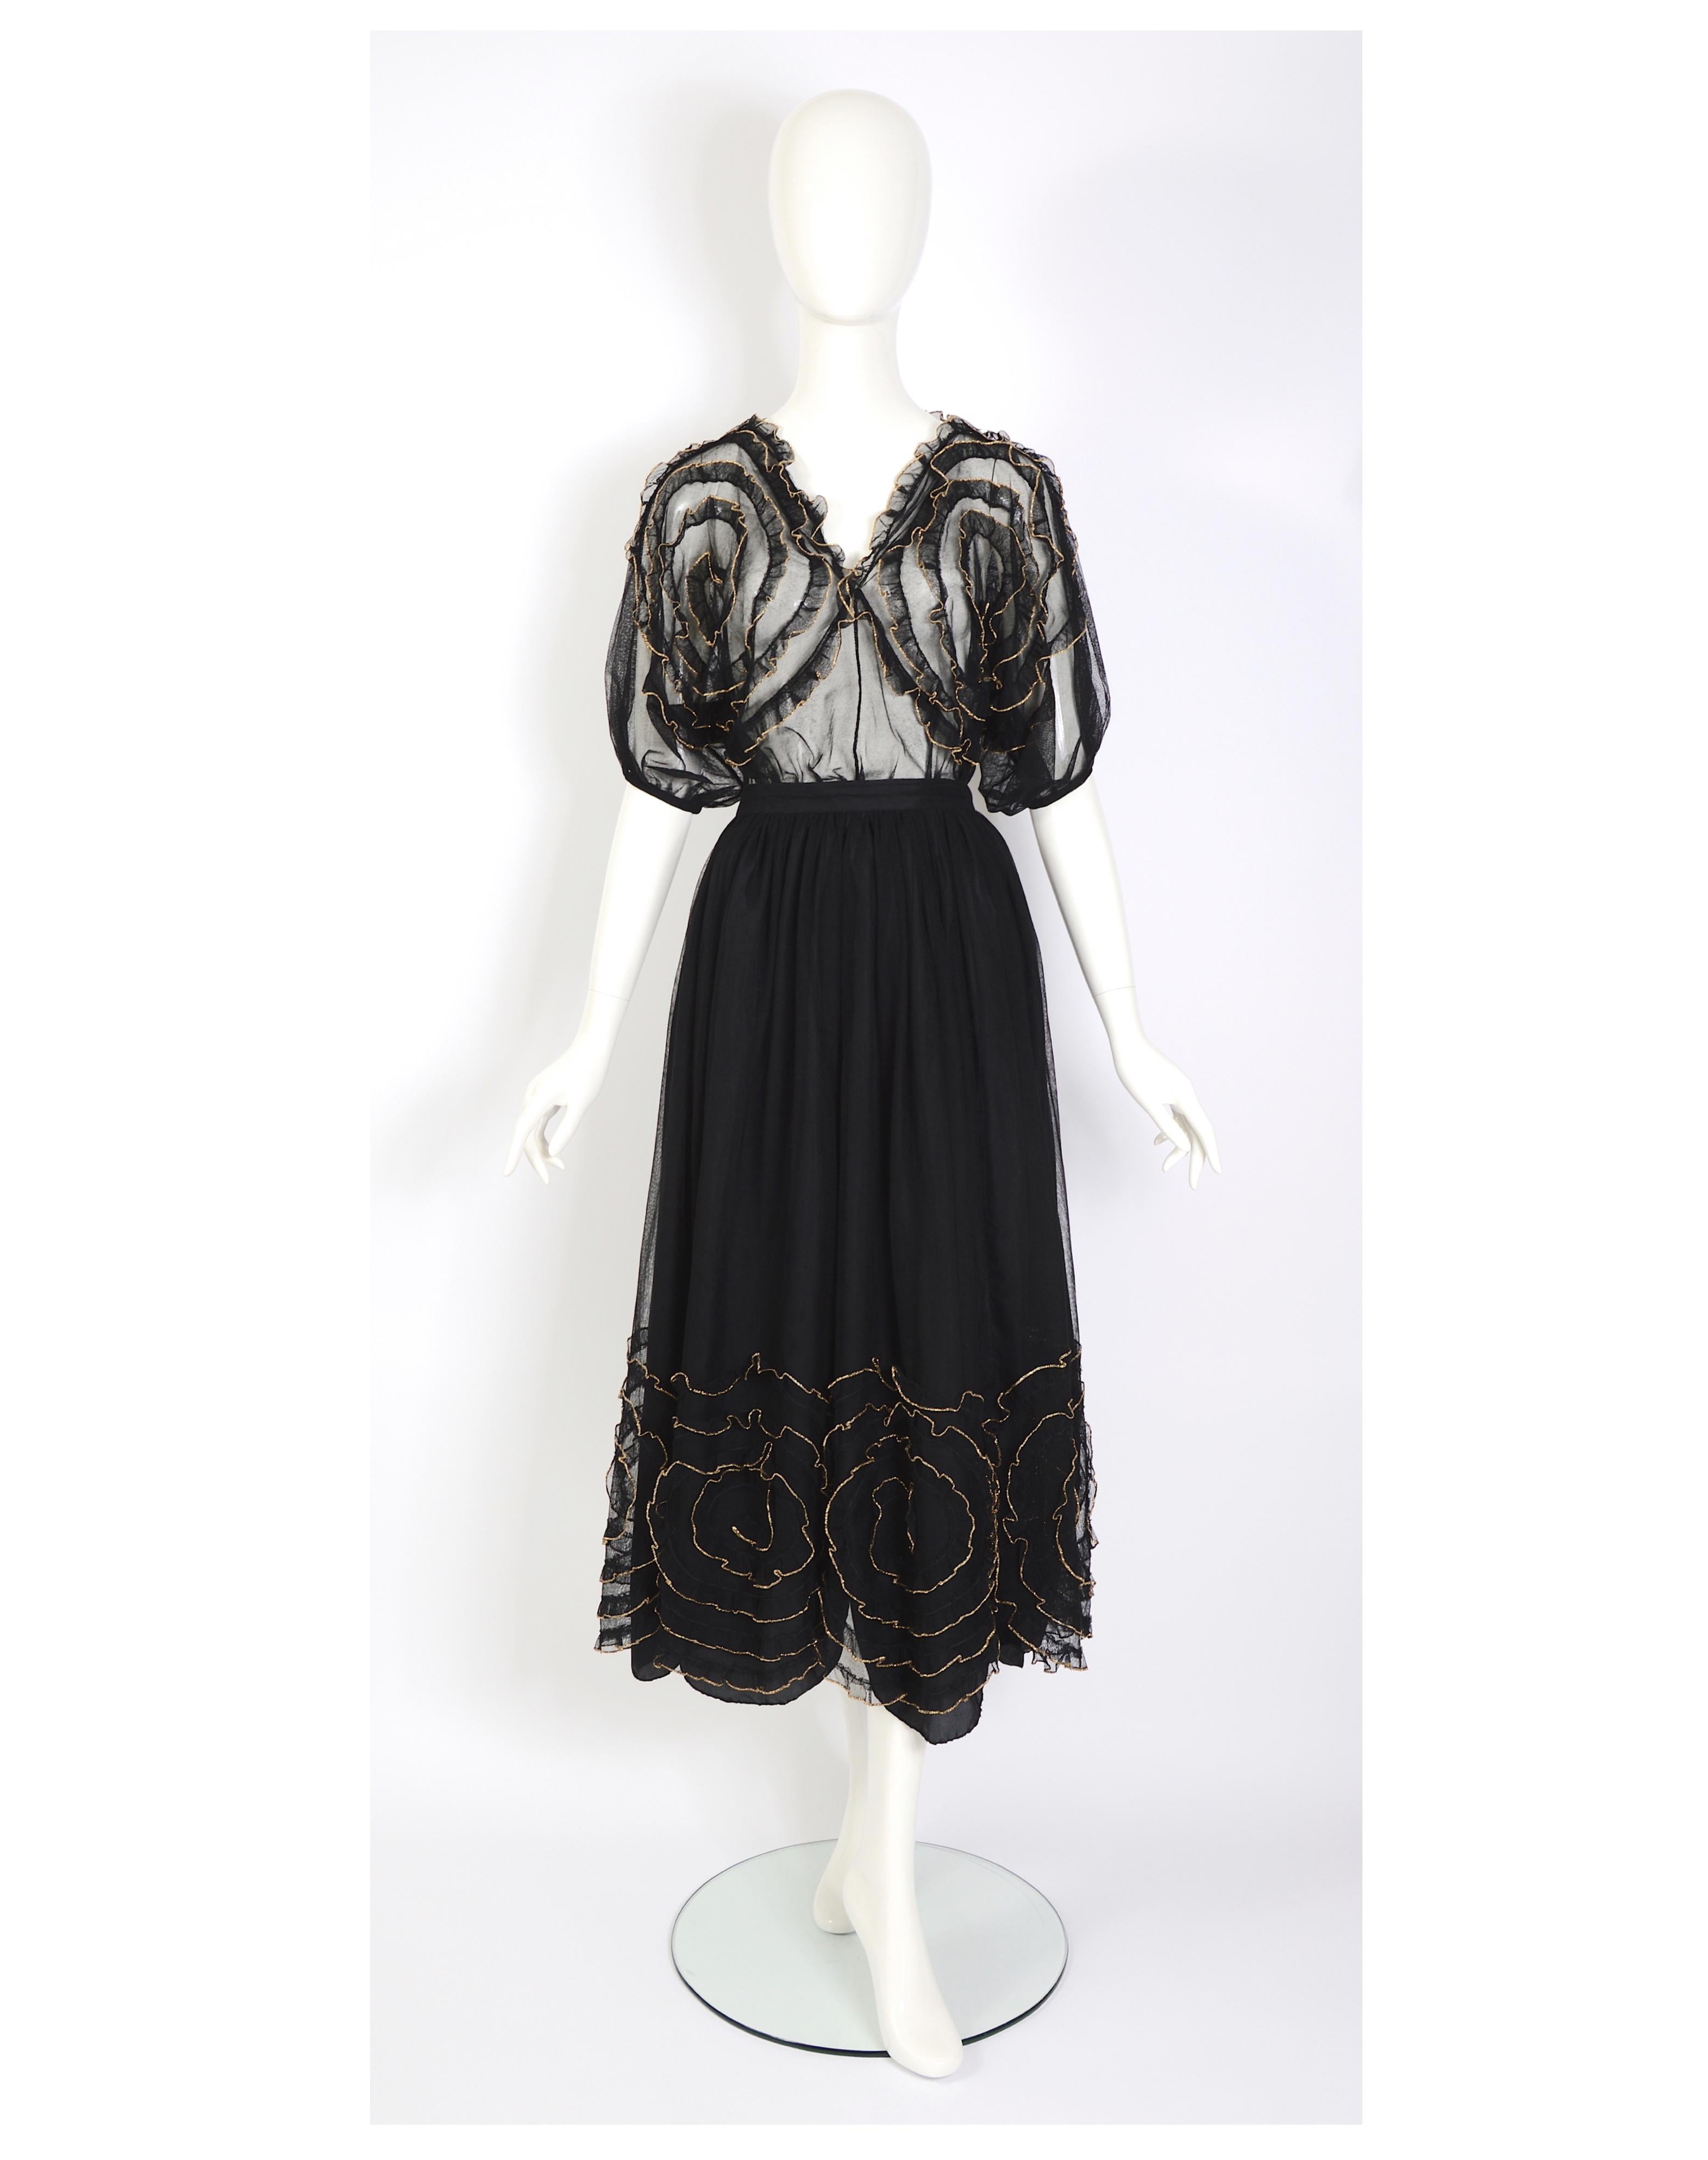 VERLAINE By a le plaisir de vous proposer un superbe ensemble vintage Chantal Thomass composé d'une jupe en tulle noir et d'un top assorti. Ornée de fleurs dorées, cette tenue est une véritable œuvre d'art. Le haut est orné de ces magnifiques